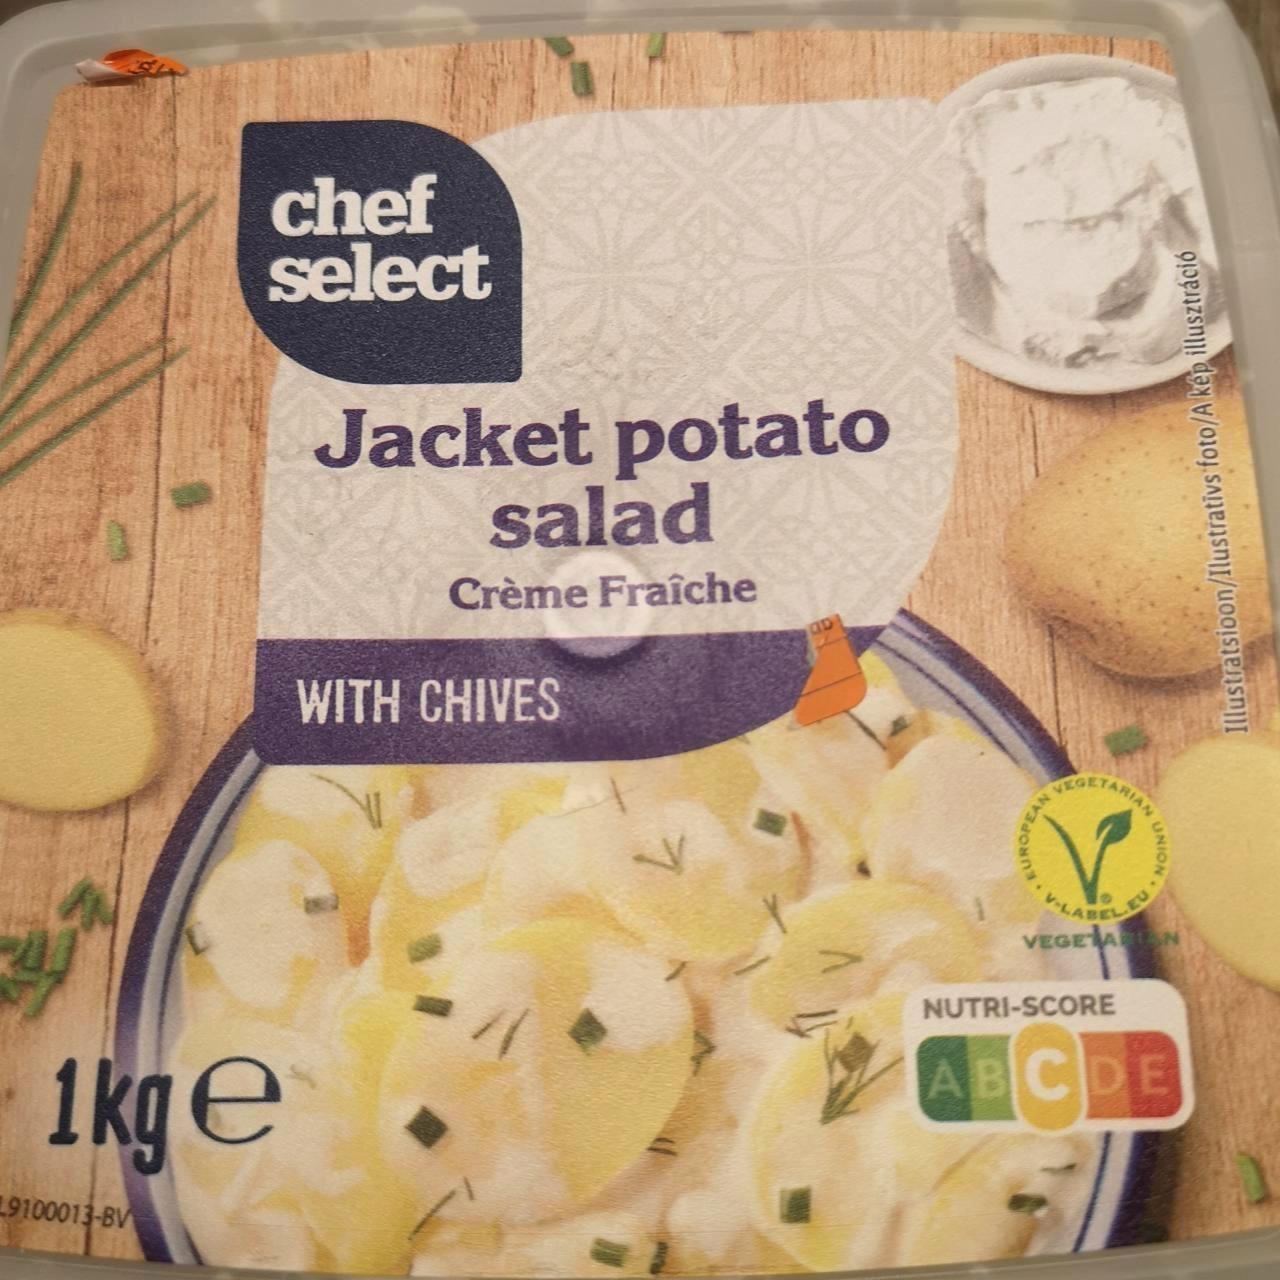 Képek - Jacket potato salad créme fraiche with chives Chef Select